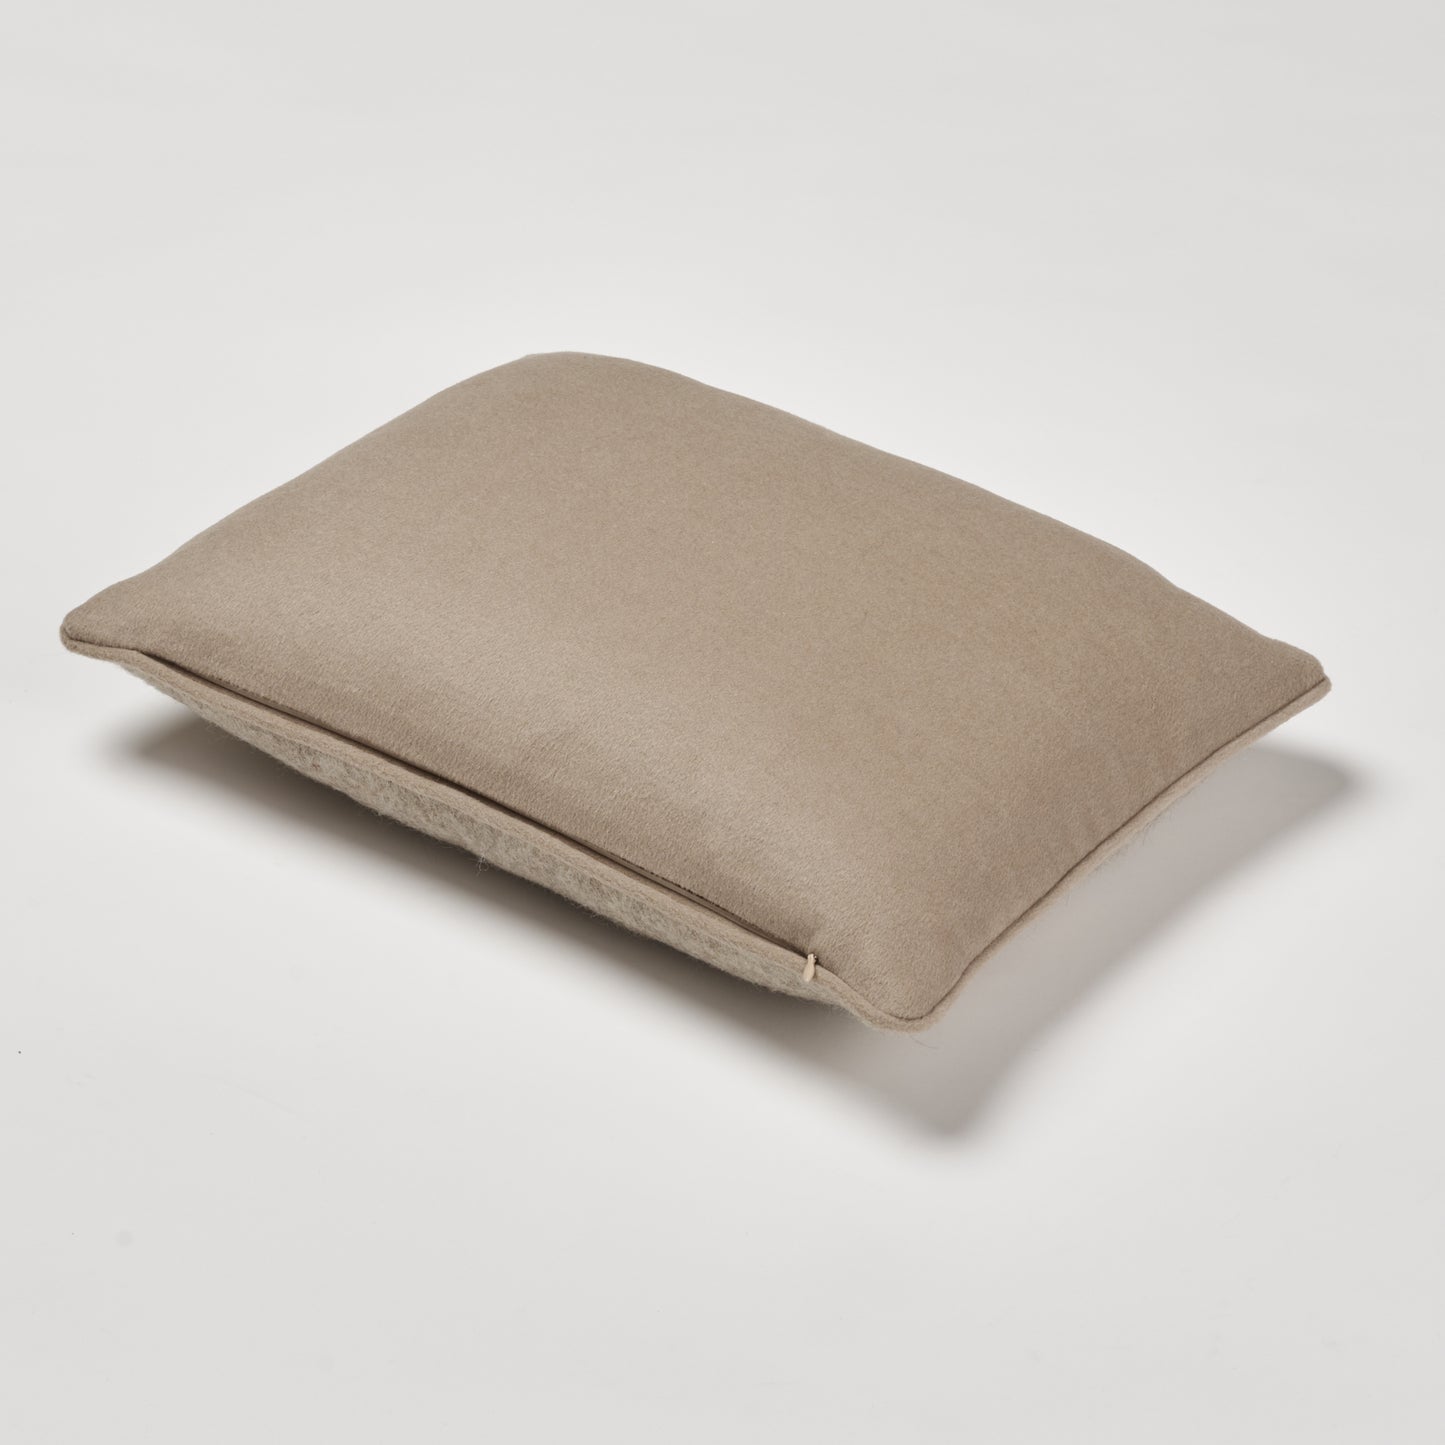 Luxe Pillow 13"x19"